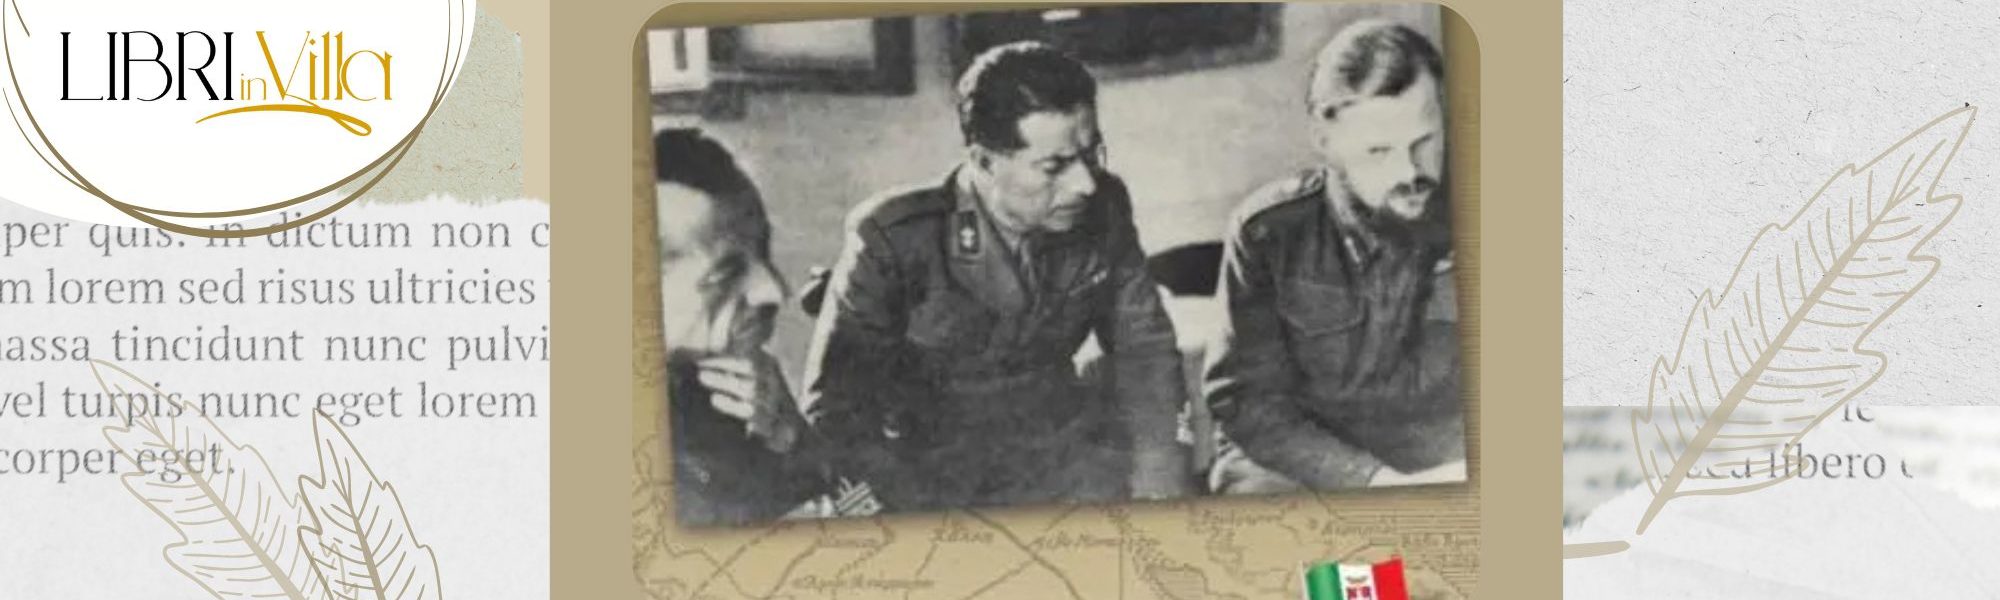 immagine del libro con tre soldati italiani in riunione